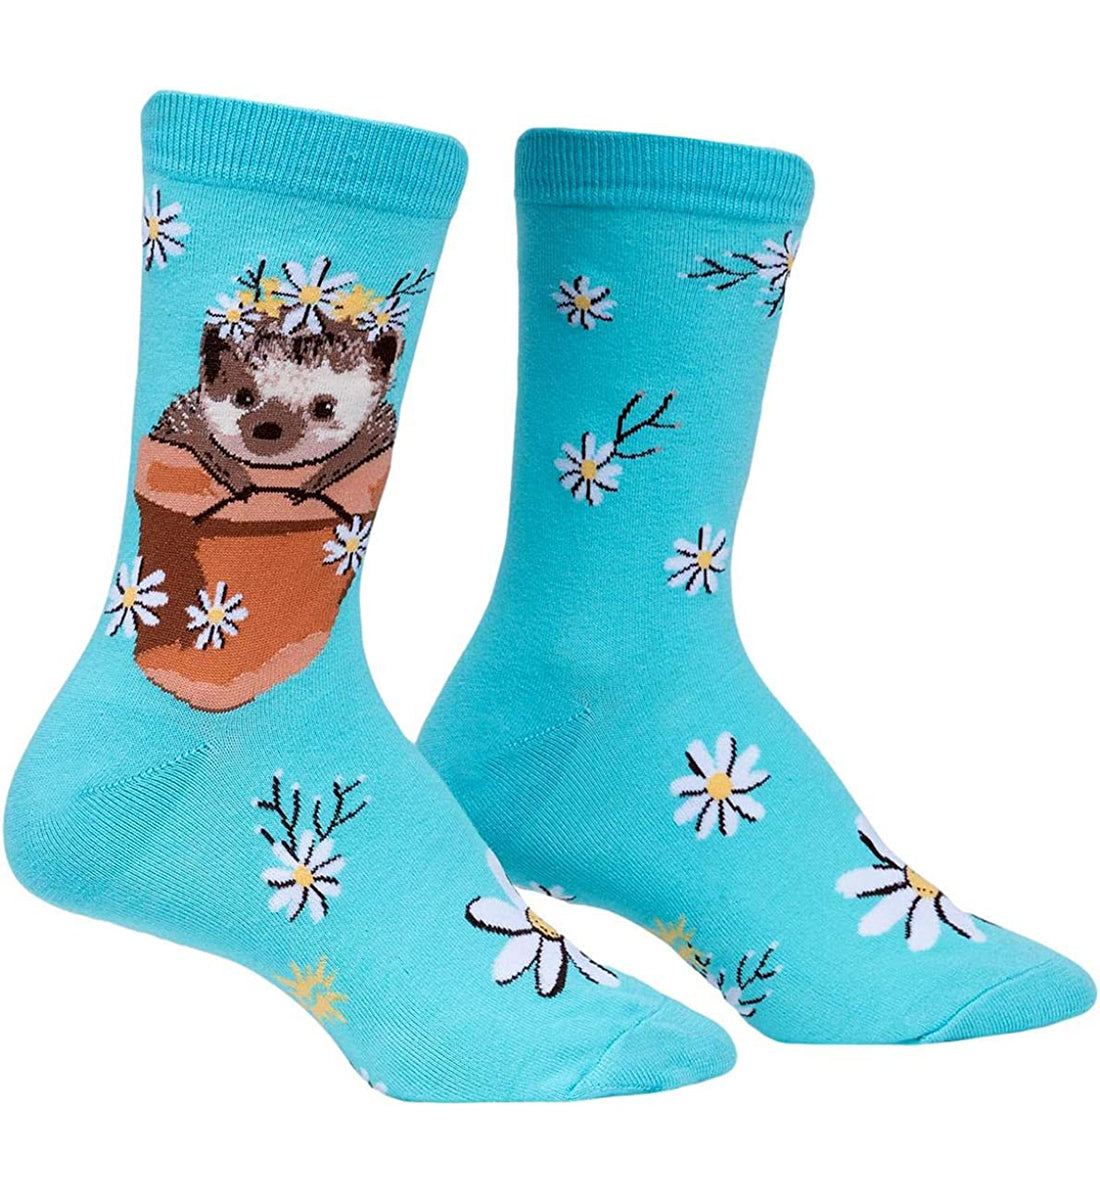 SOCK it to me Women&#39;s Crew Socks (w0356),My Dear Hedgehog - My Dear Hedgehog,One Size